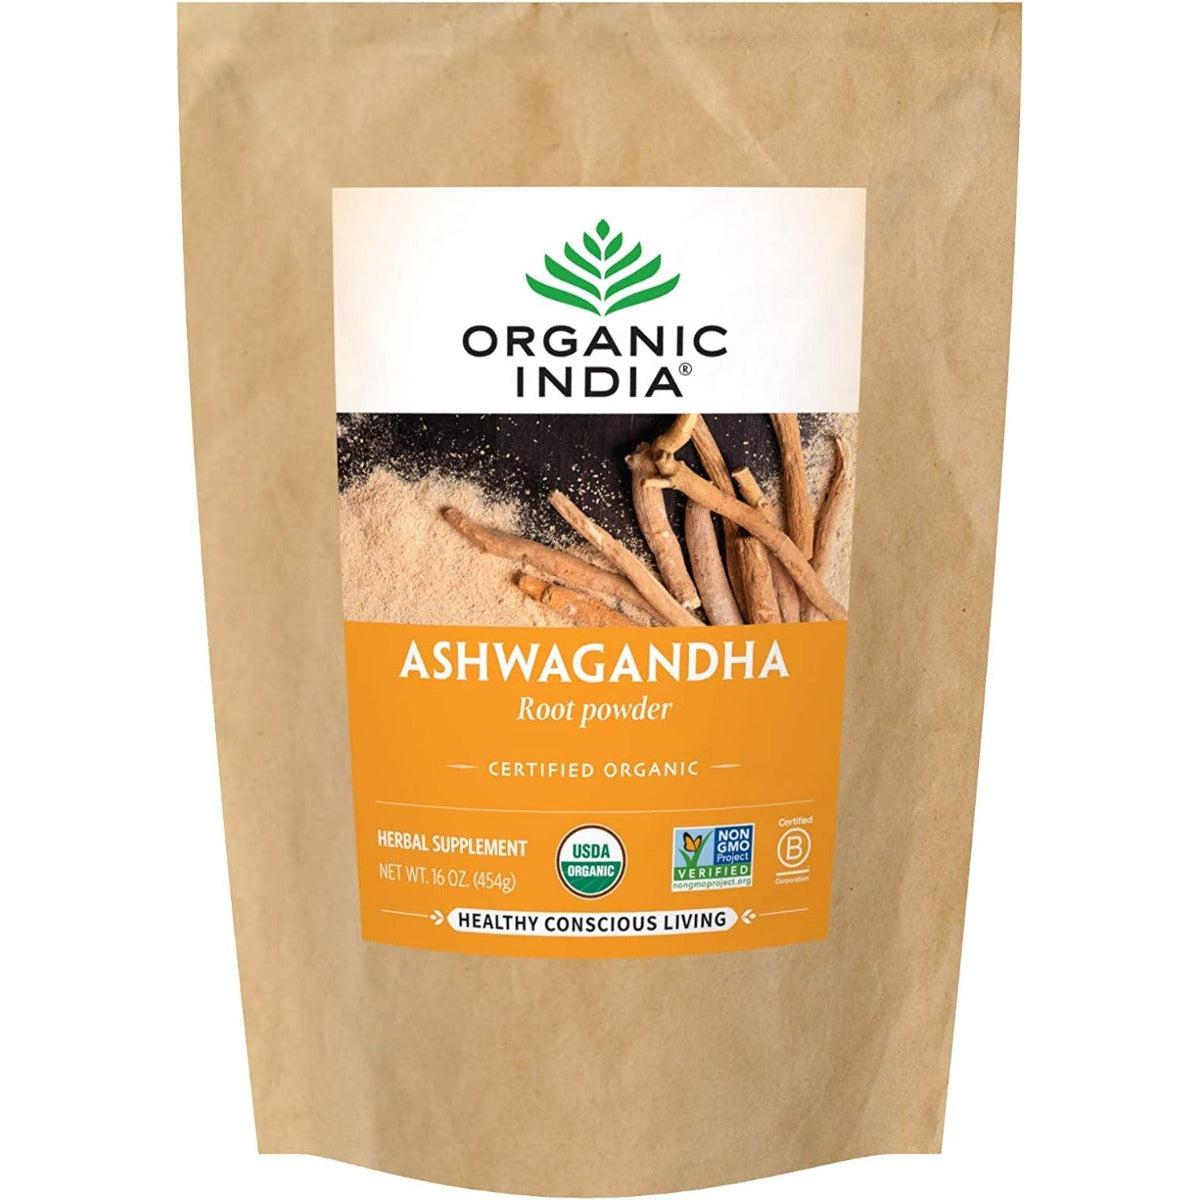 Organic India Organic Ashwagandha Powder 454g